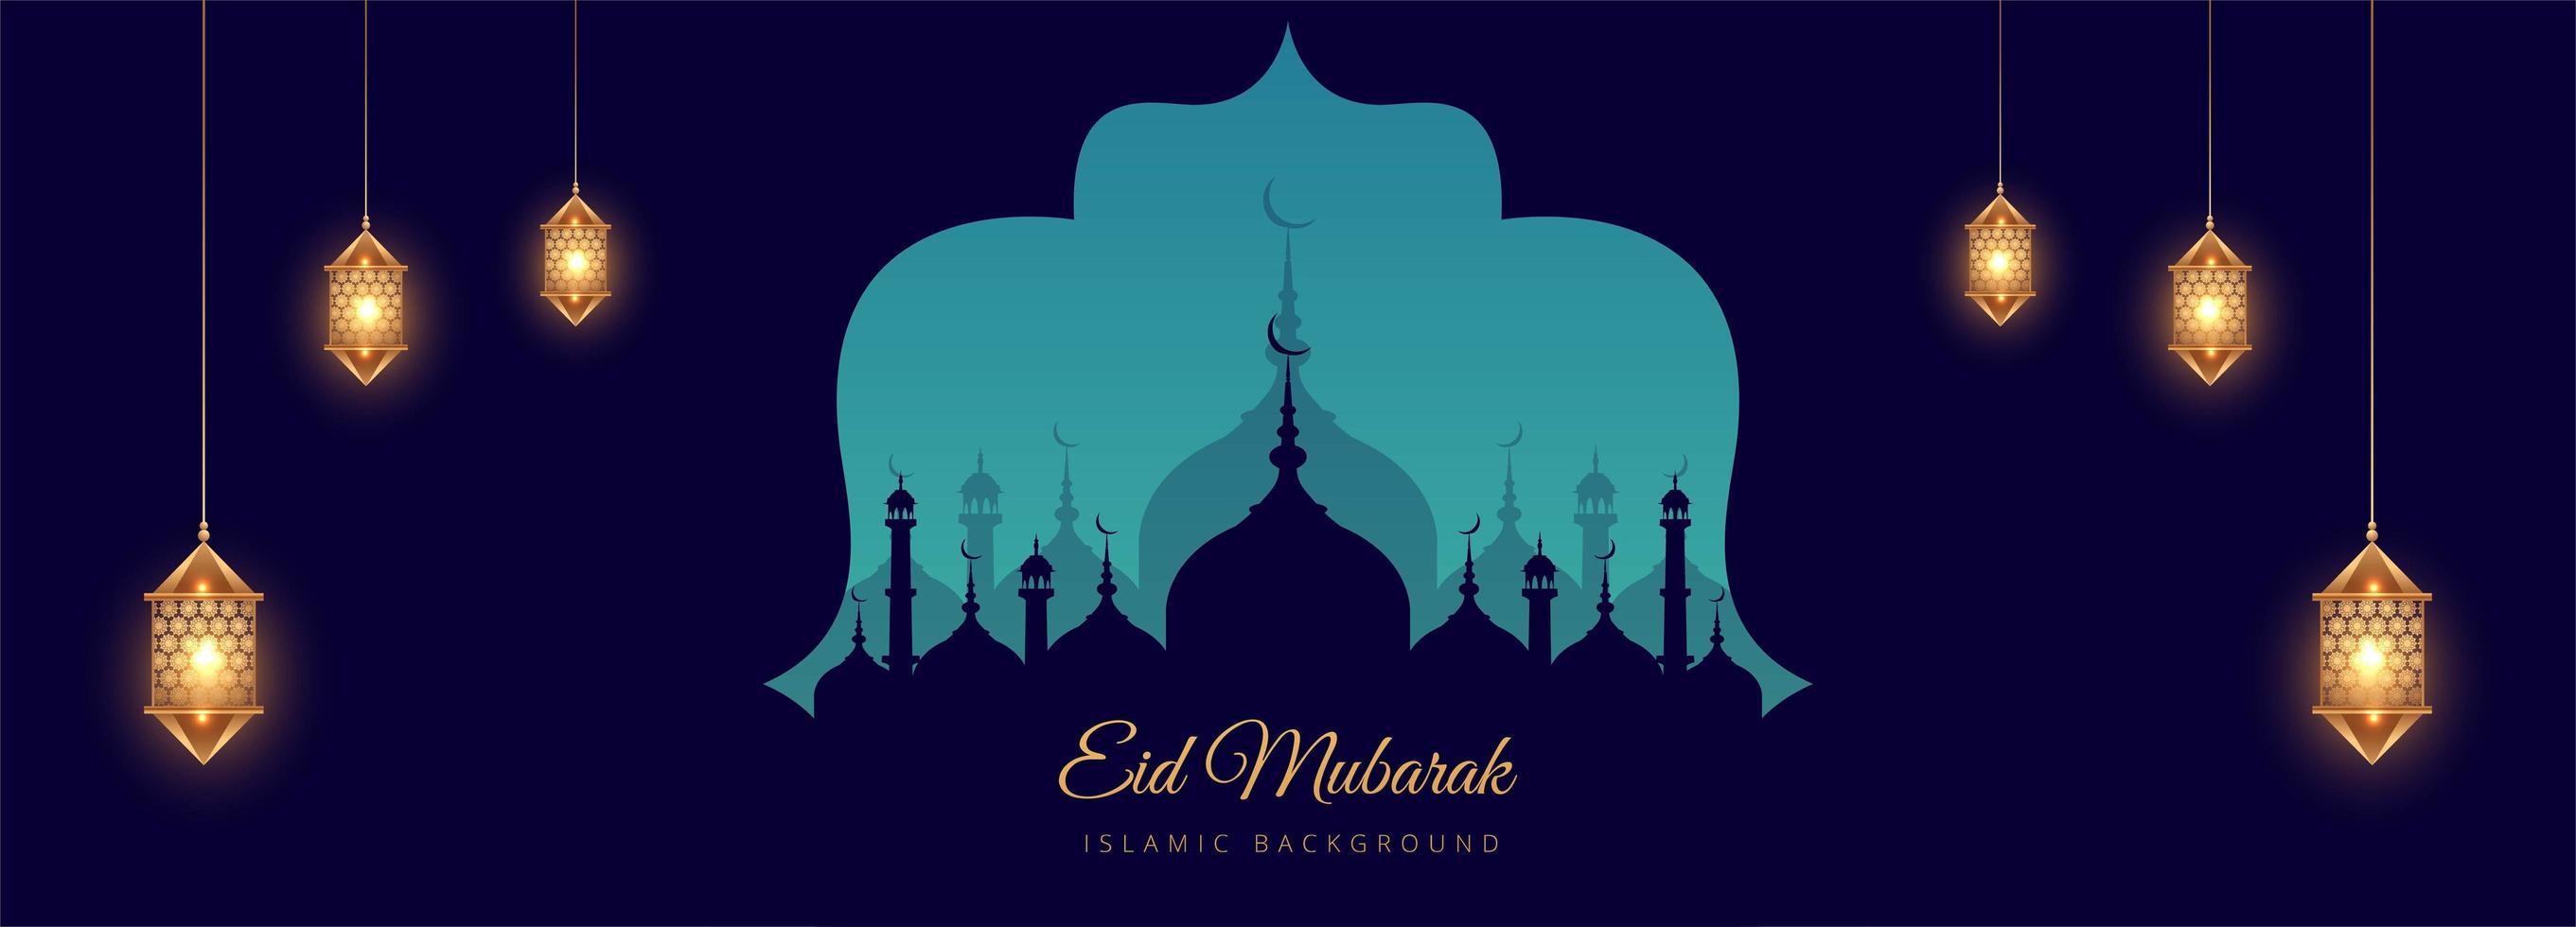 blaues Moschee-Silhouette-Banner des islamischen Festivals vektor